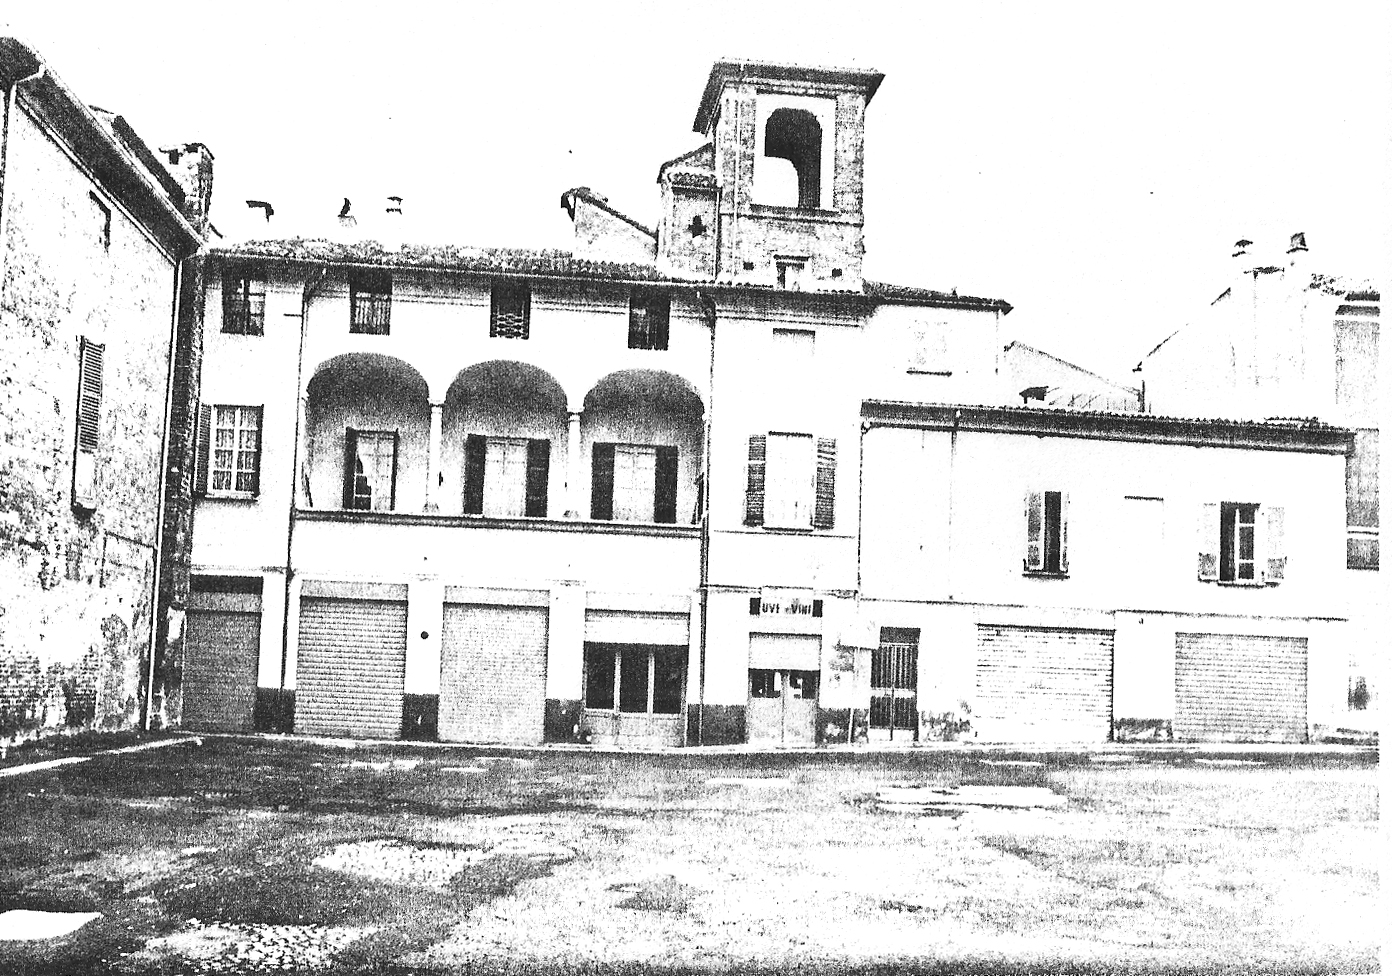 Casa in Chiostri del Duomo 19-21 (casa) - Piacenza (PC) 